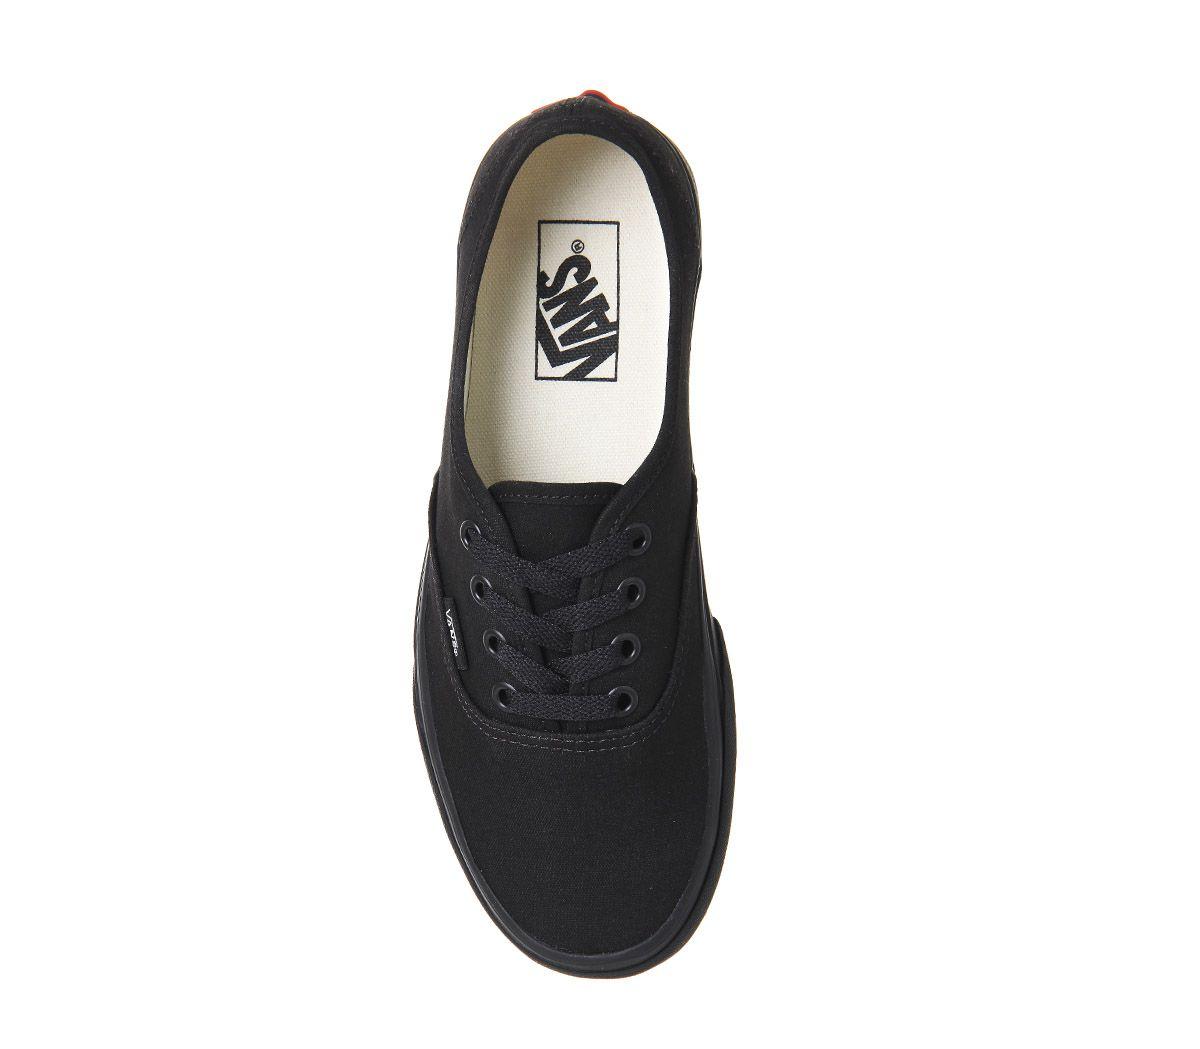 Vans Canvas Authentic Skate/bmx Shoes in Black - Save 54% - Lyst